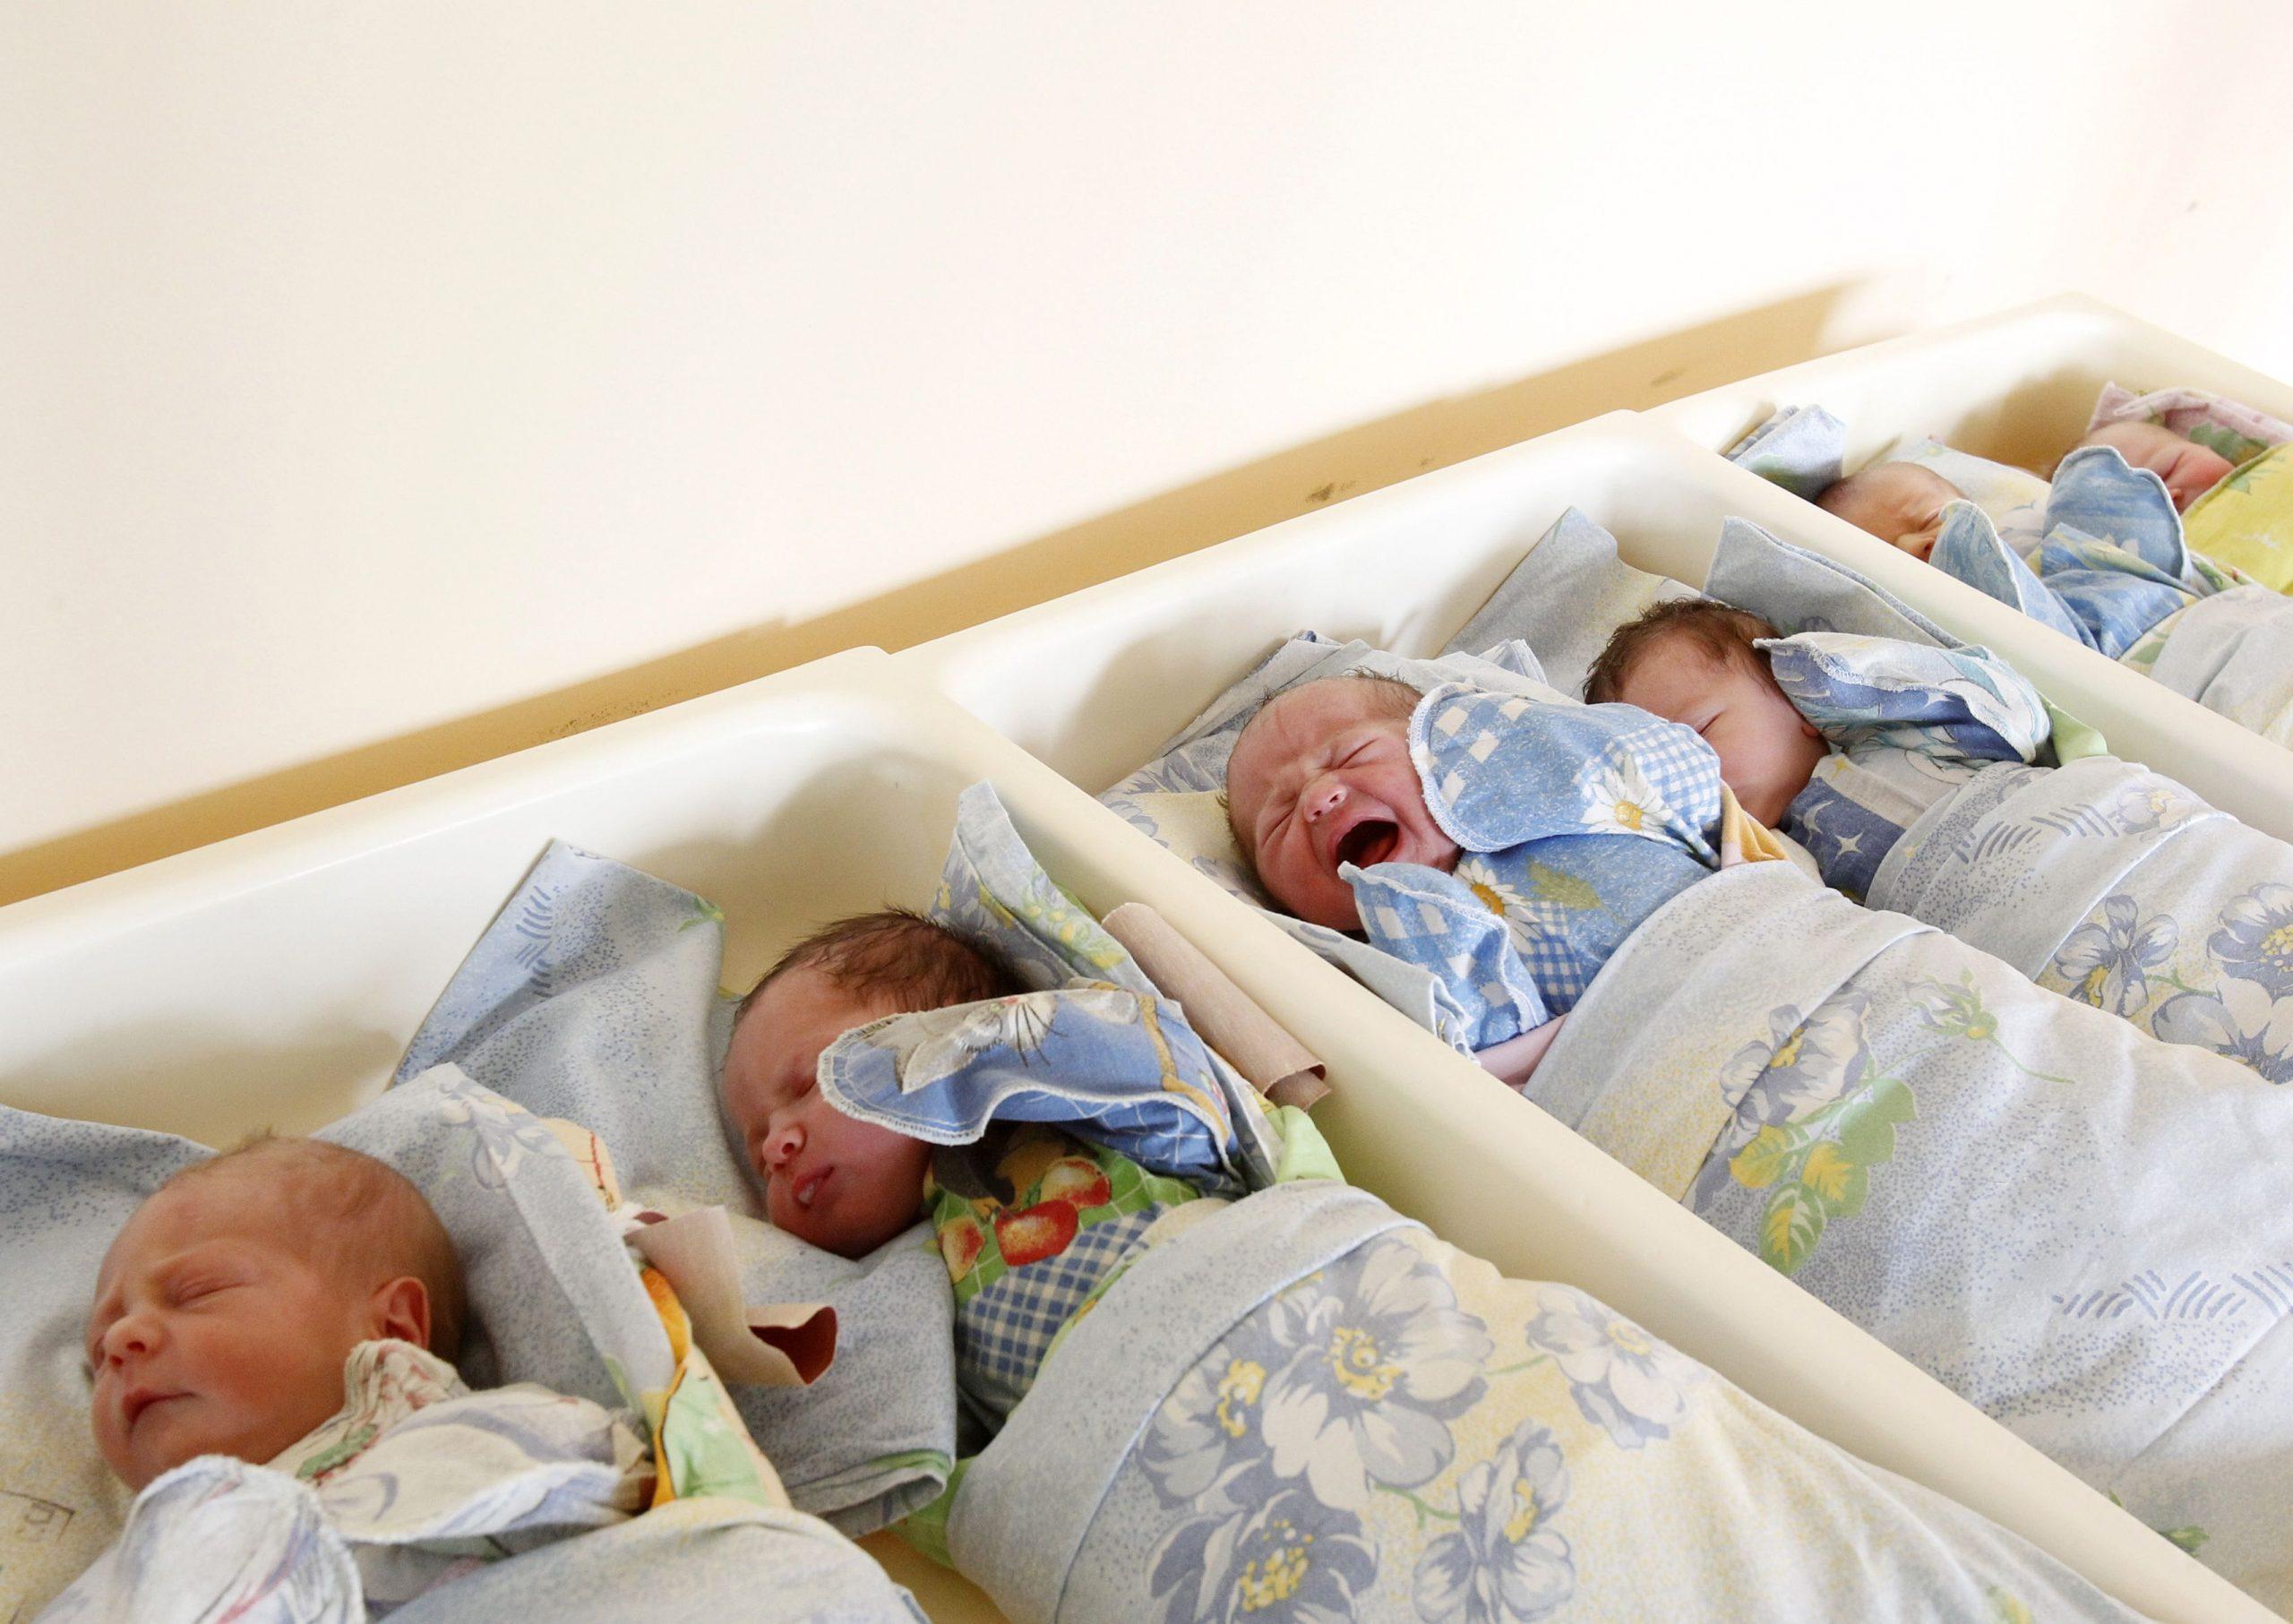 Njemačka: U februaru se rodilo šest posto više beba nego februara 2020. godine - Avaz